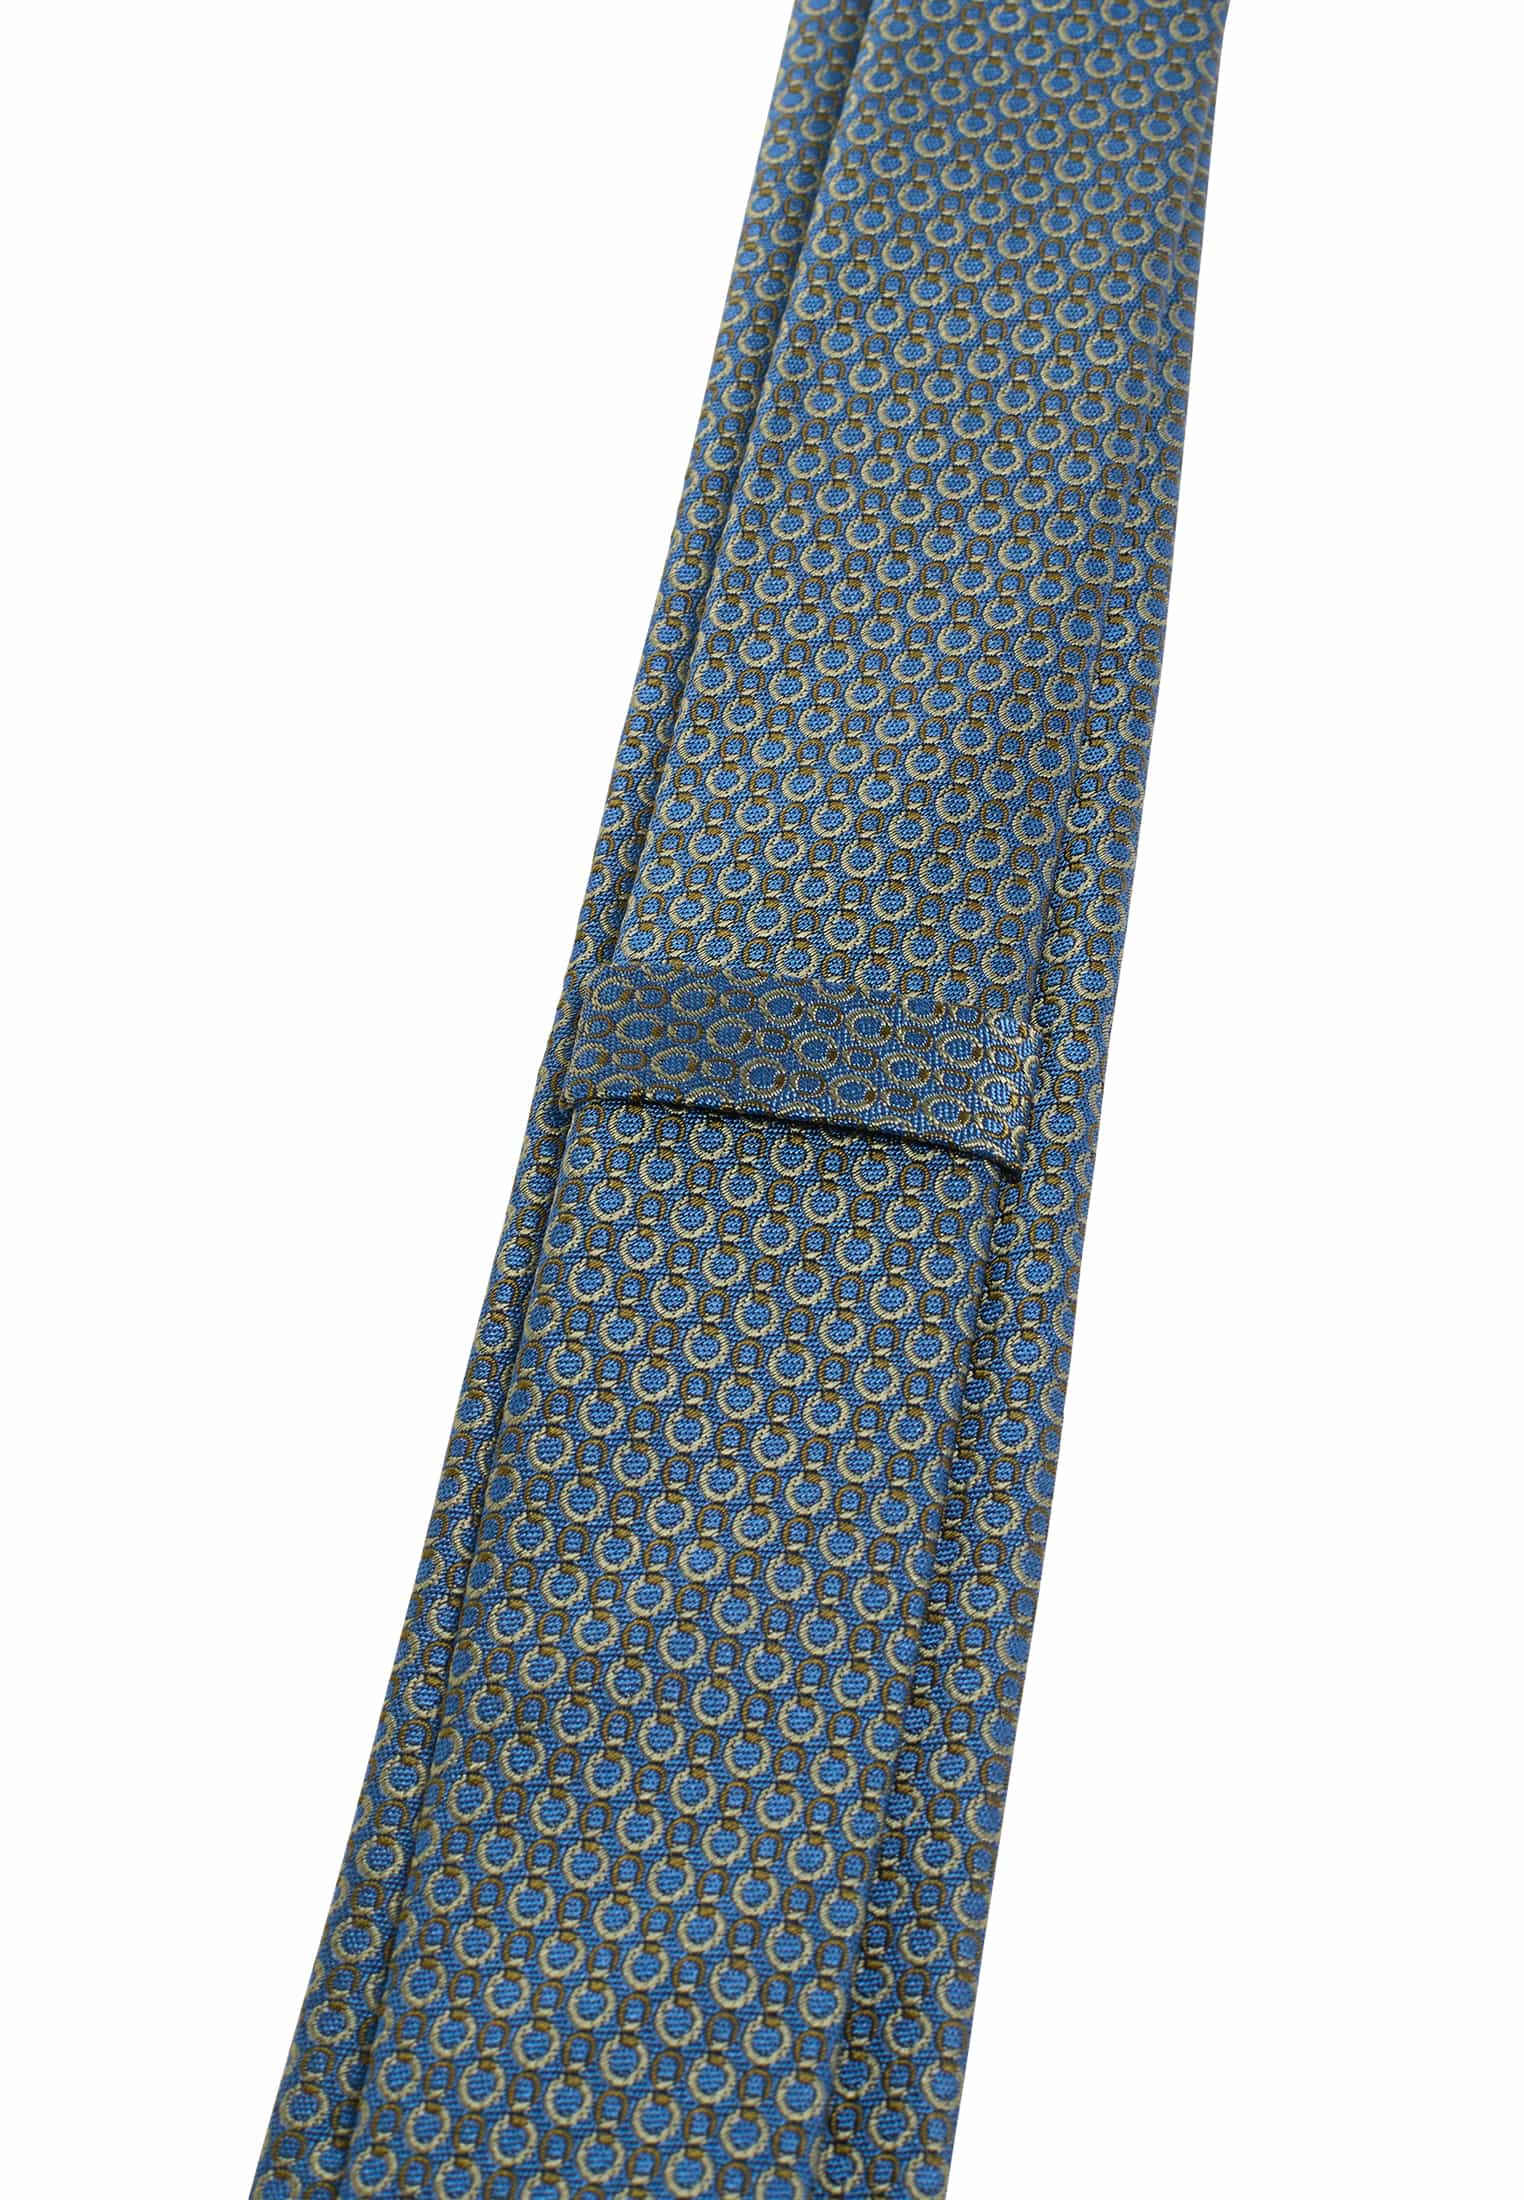 Krawatte in blau/grün strukturiert | blau/grün | 142 | 1AC01948-81-48-142 | Breite Krawatten